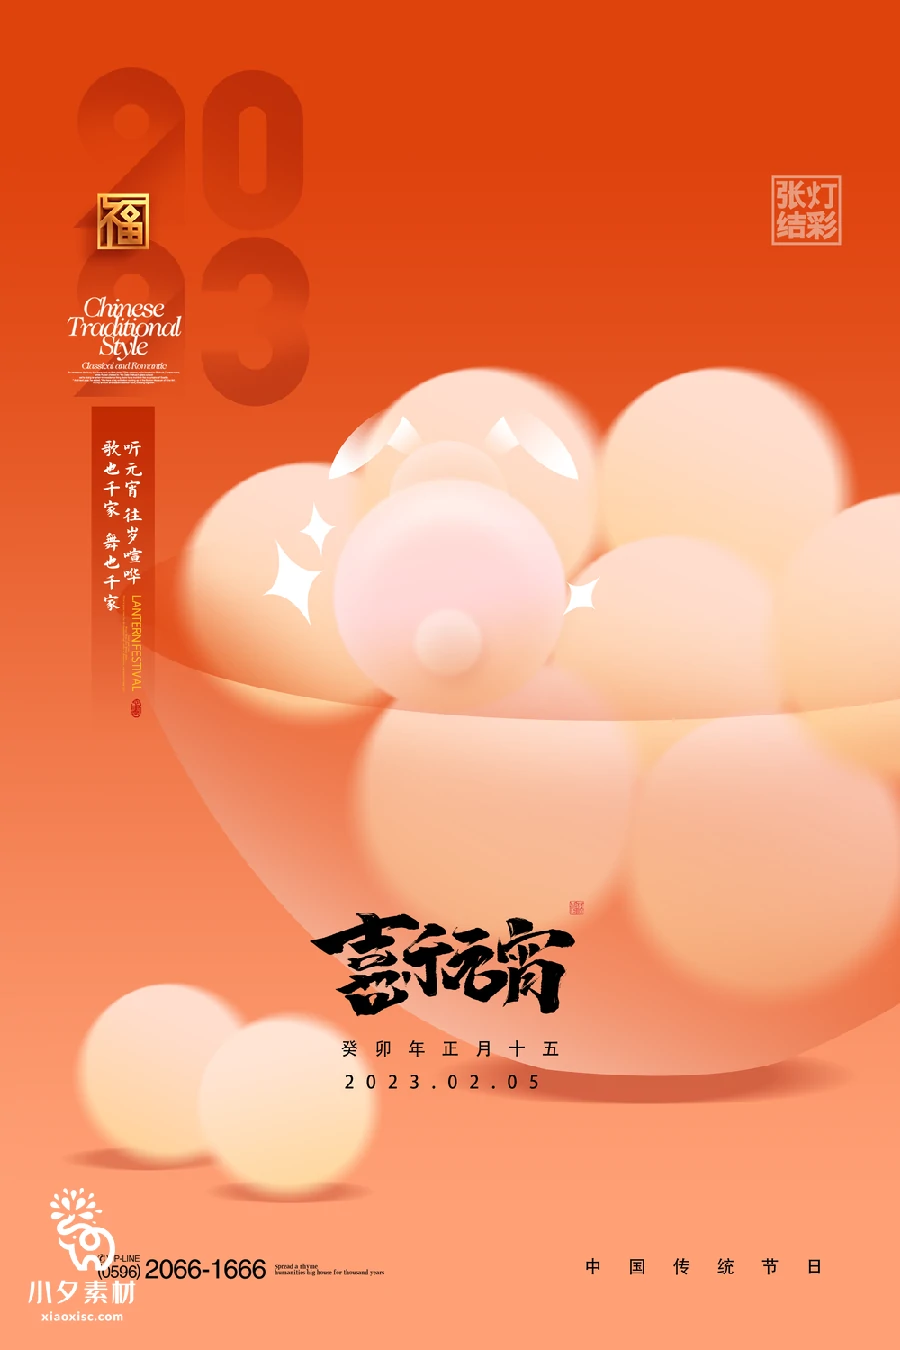 69套 元宵节节日节庆海报PSD分层设计素材 【007】